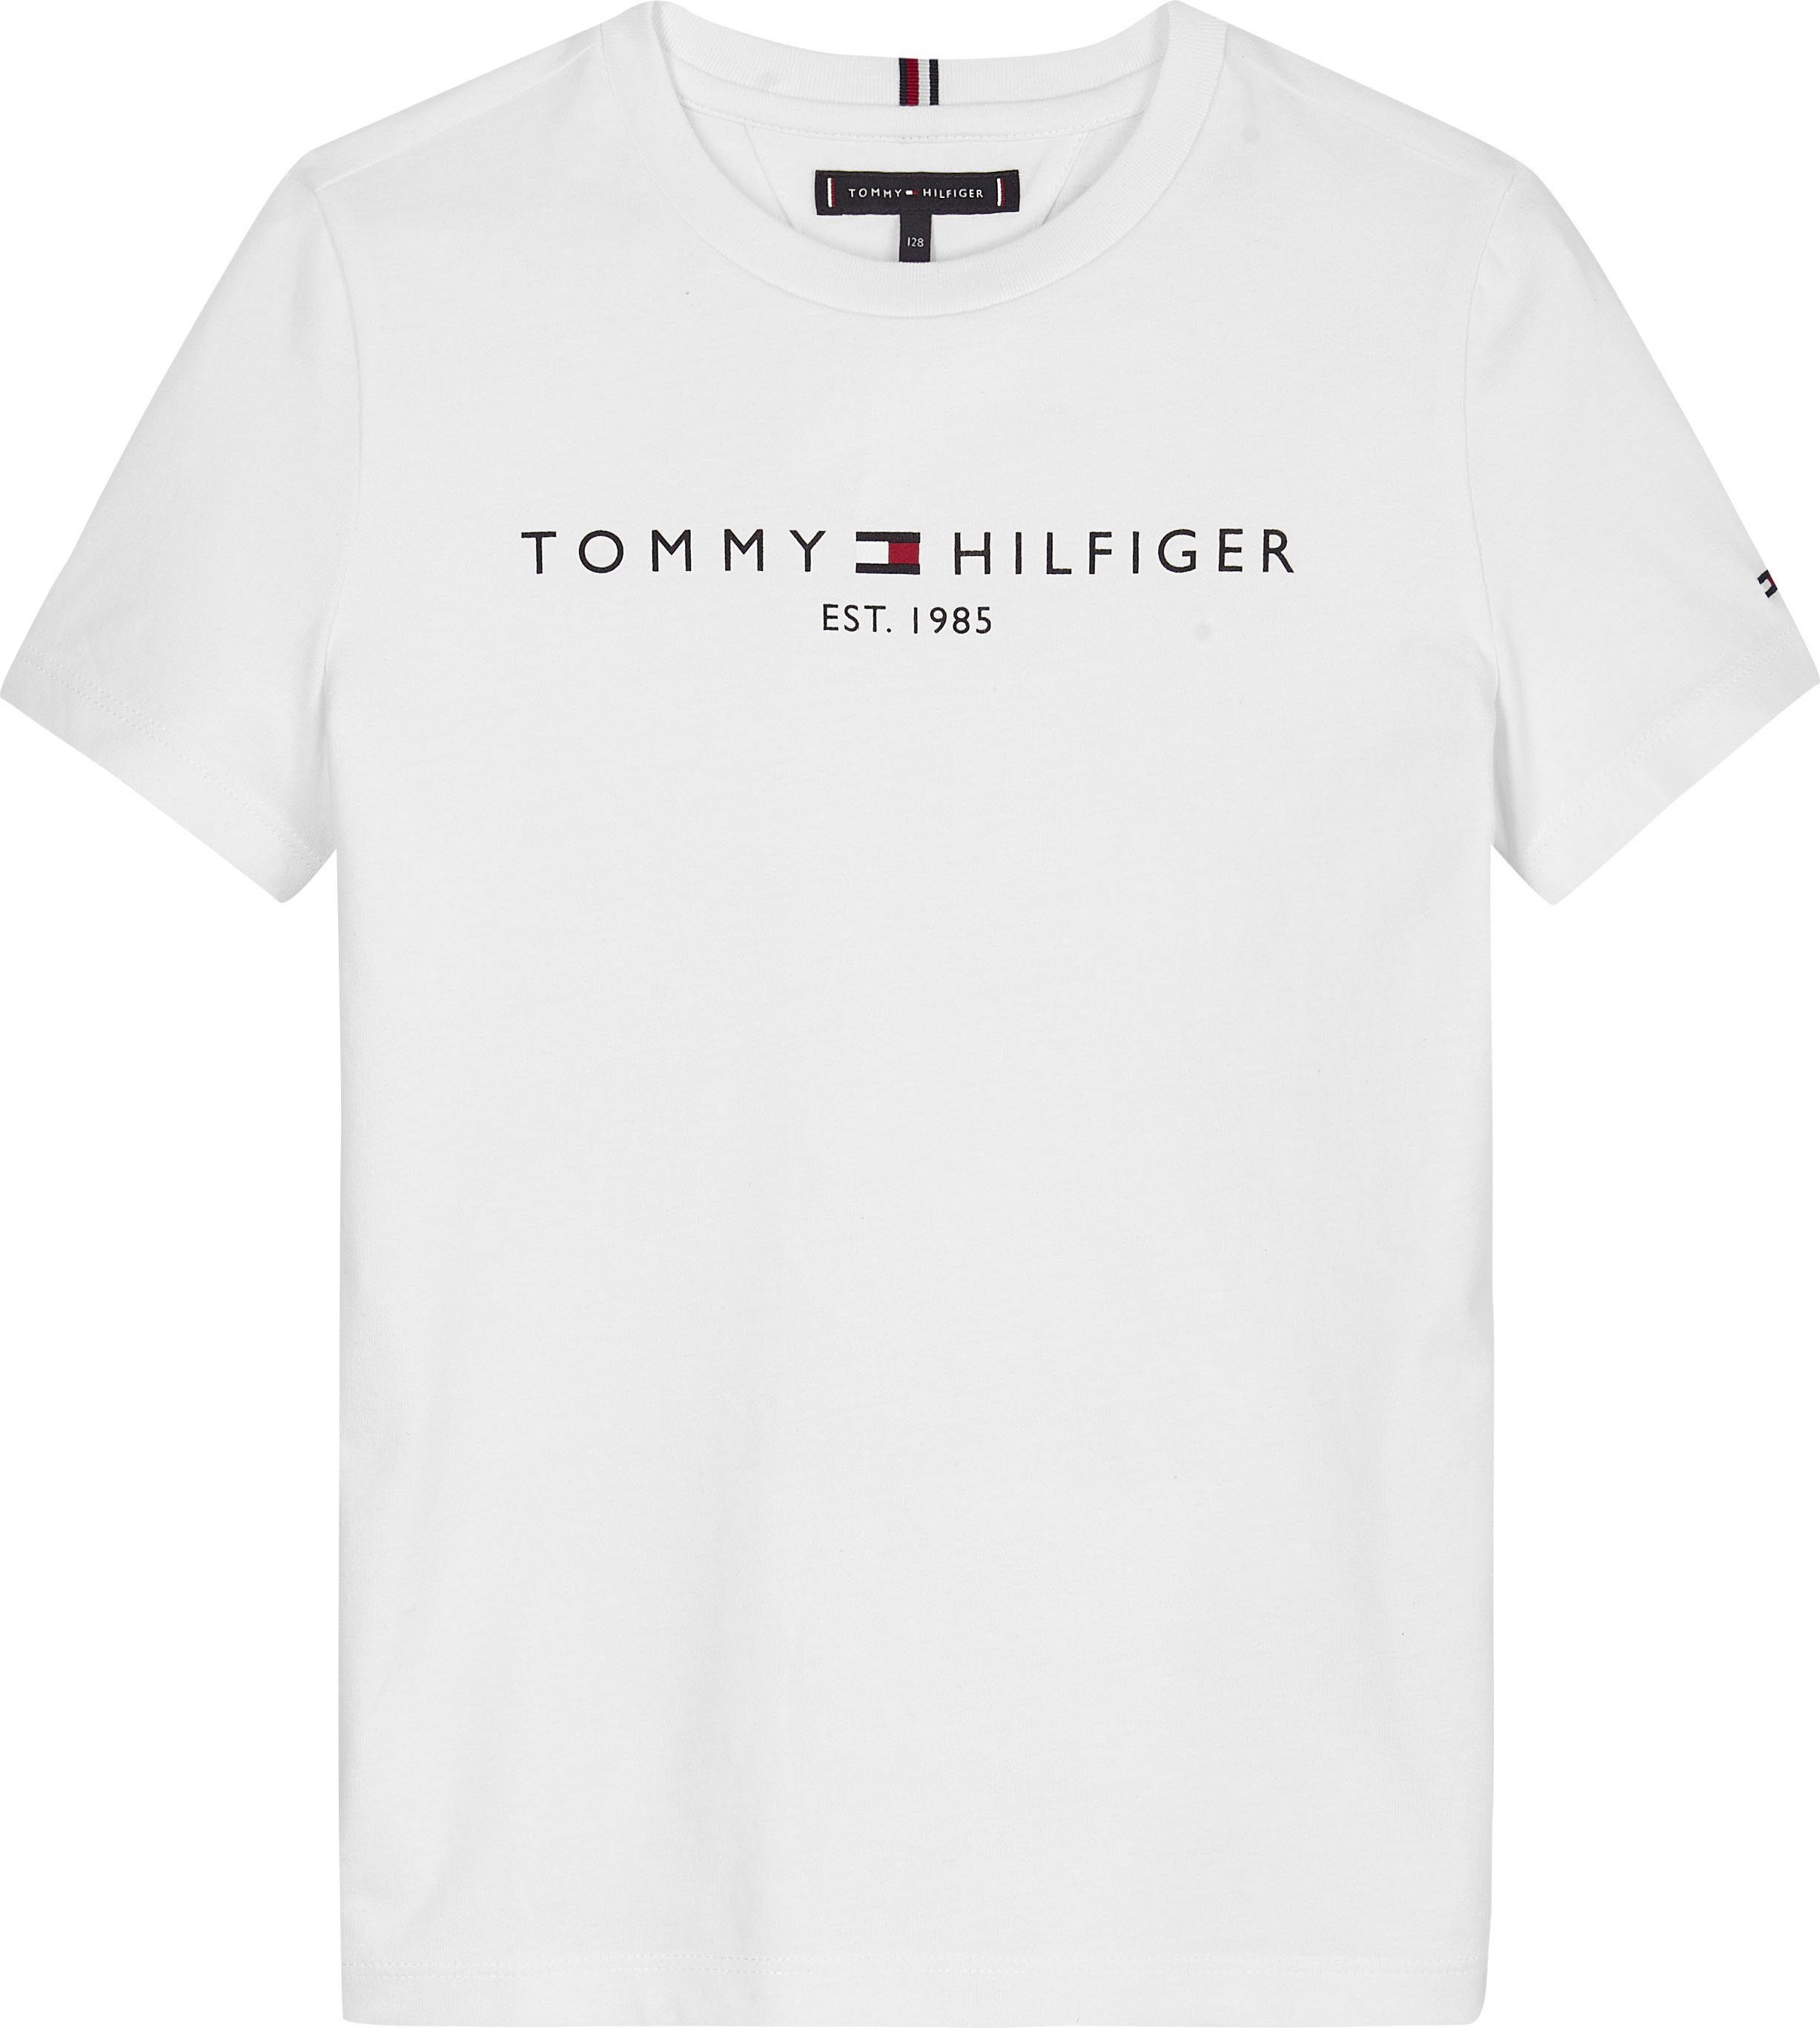 Tommy Hilfiger Kids und Jungen ESSENTIAL MiniMe,für Junior Kinder Mädchen TEE T-Shirt